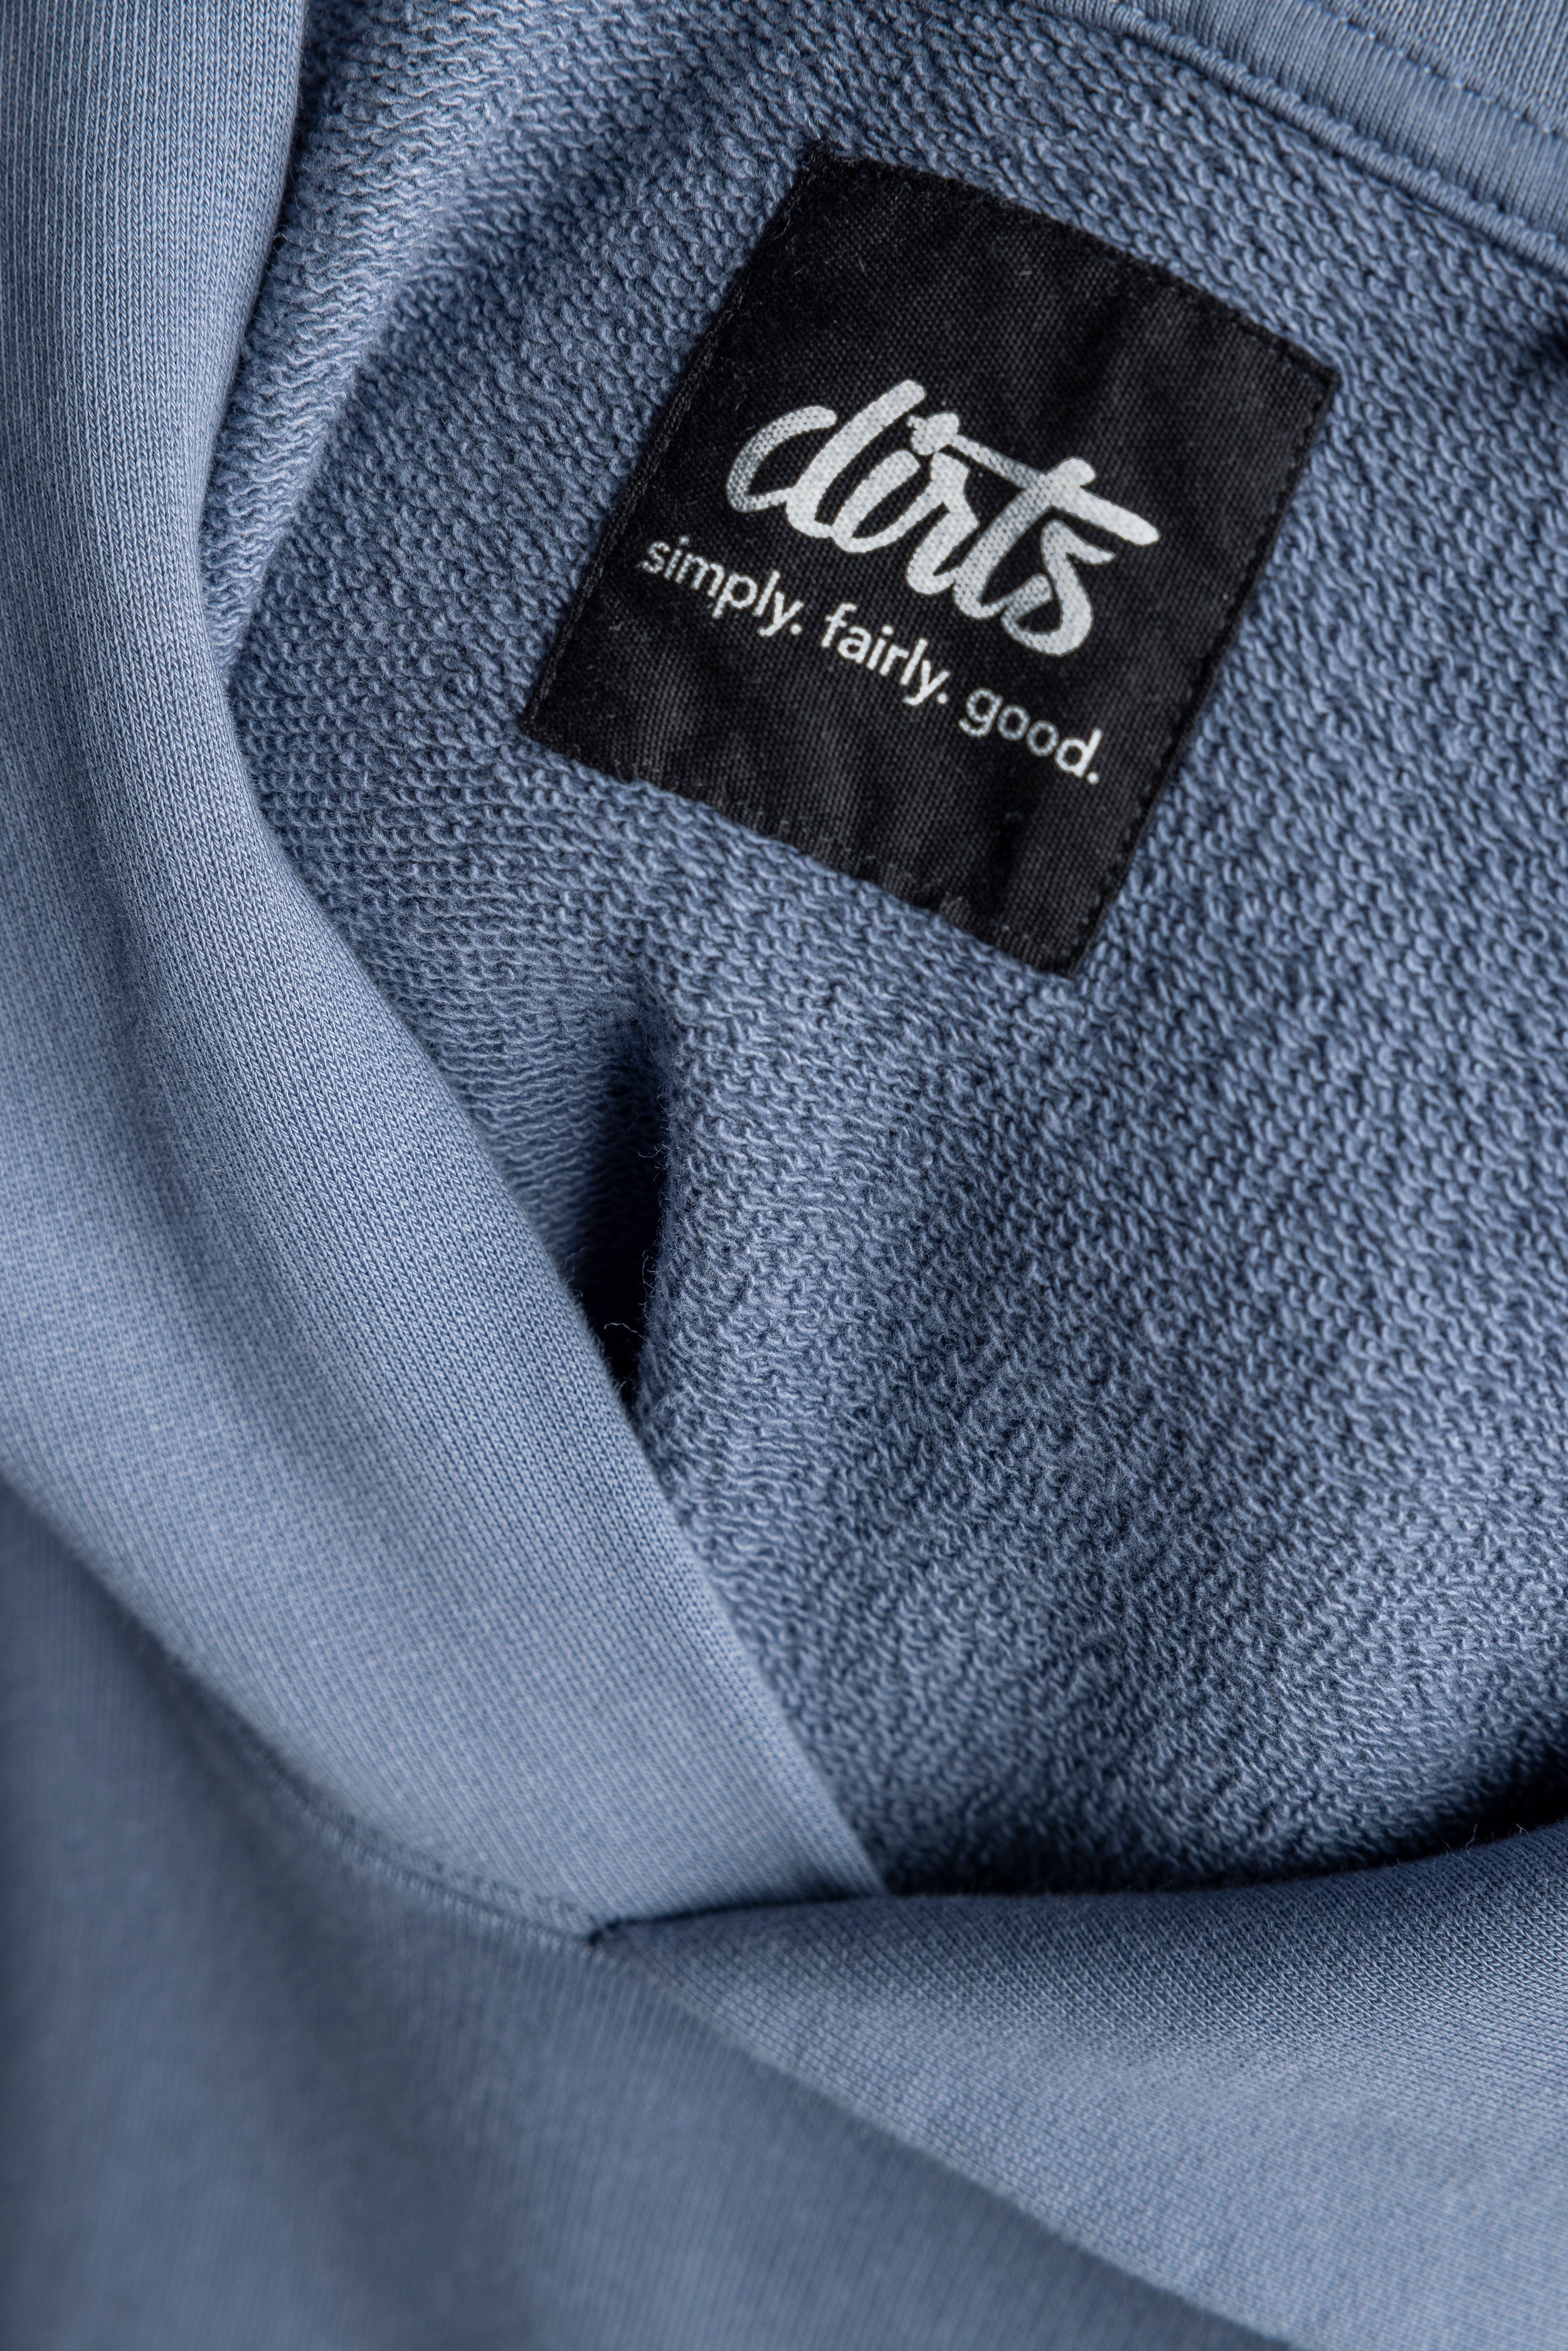 Blauer Hoodie Premium Blank aus 100% Bio-Baumwolle von DIRTS